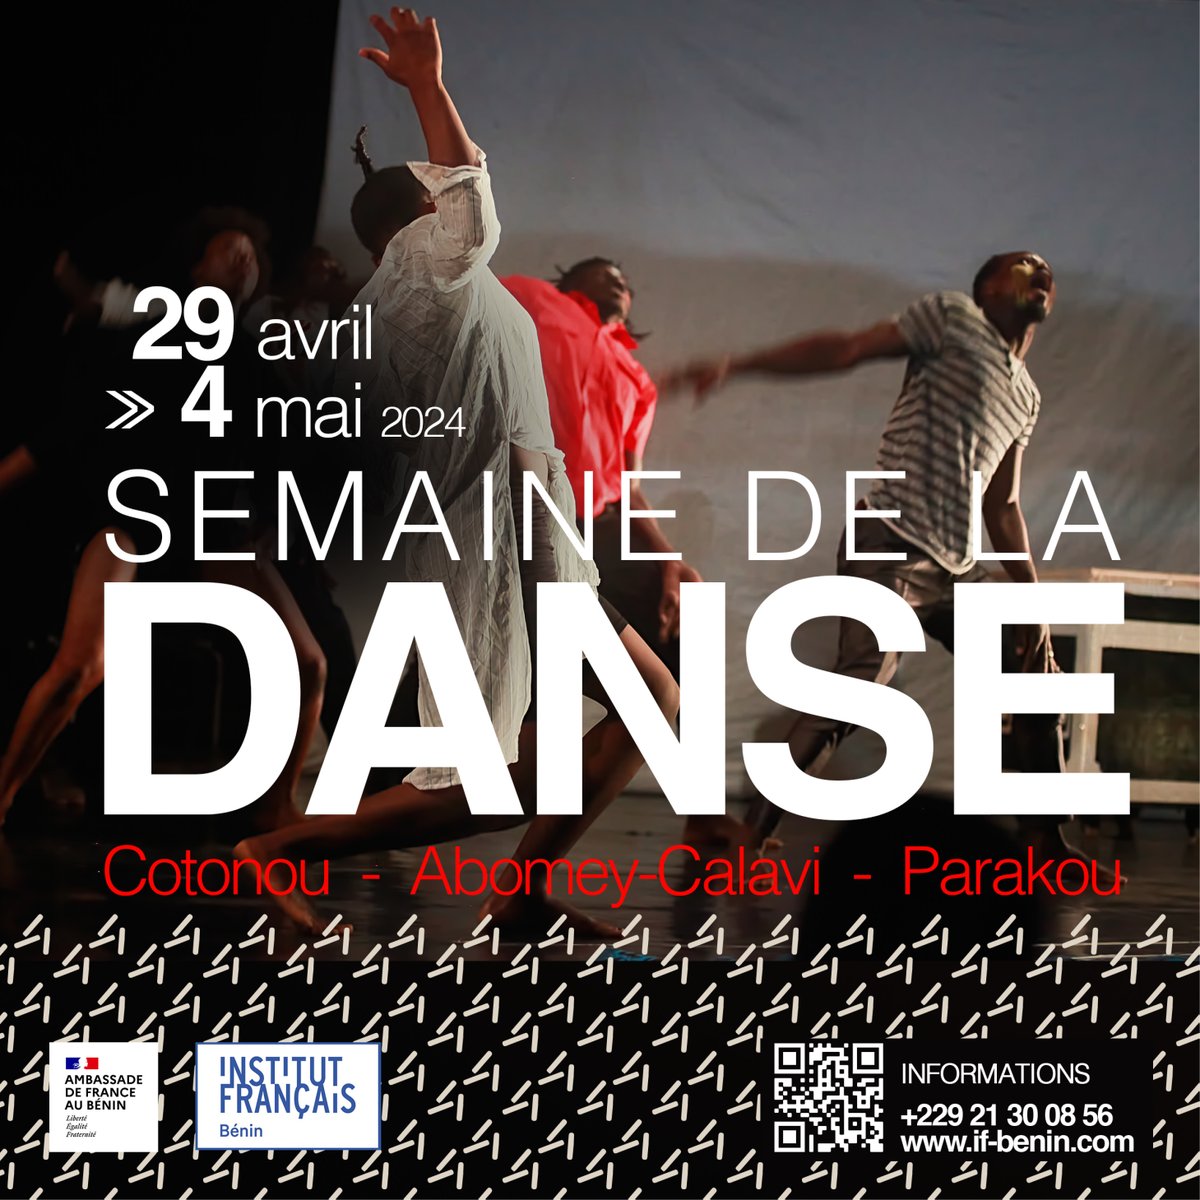 [𝐒𝐄𝐌𝐀𝐈𝐍𝐄 𝐃𝐄 𝐋𝐀 𝐃𝐀𝐍𝐒𝐄] De belles activités de danse prévues à l'Institut français du Bénin jusqu’au samedi 4 mai. if-benin.com/agenda-culture…